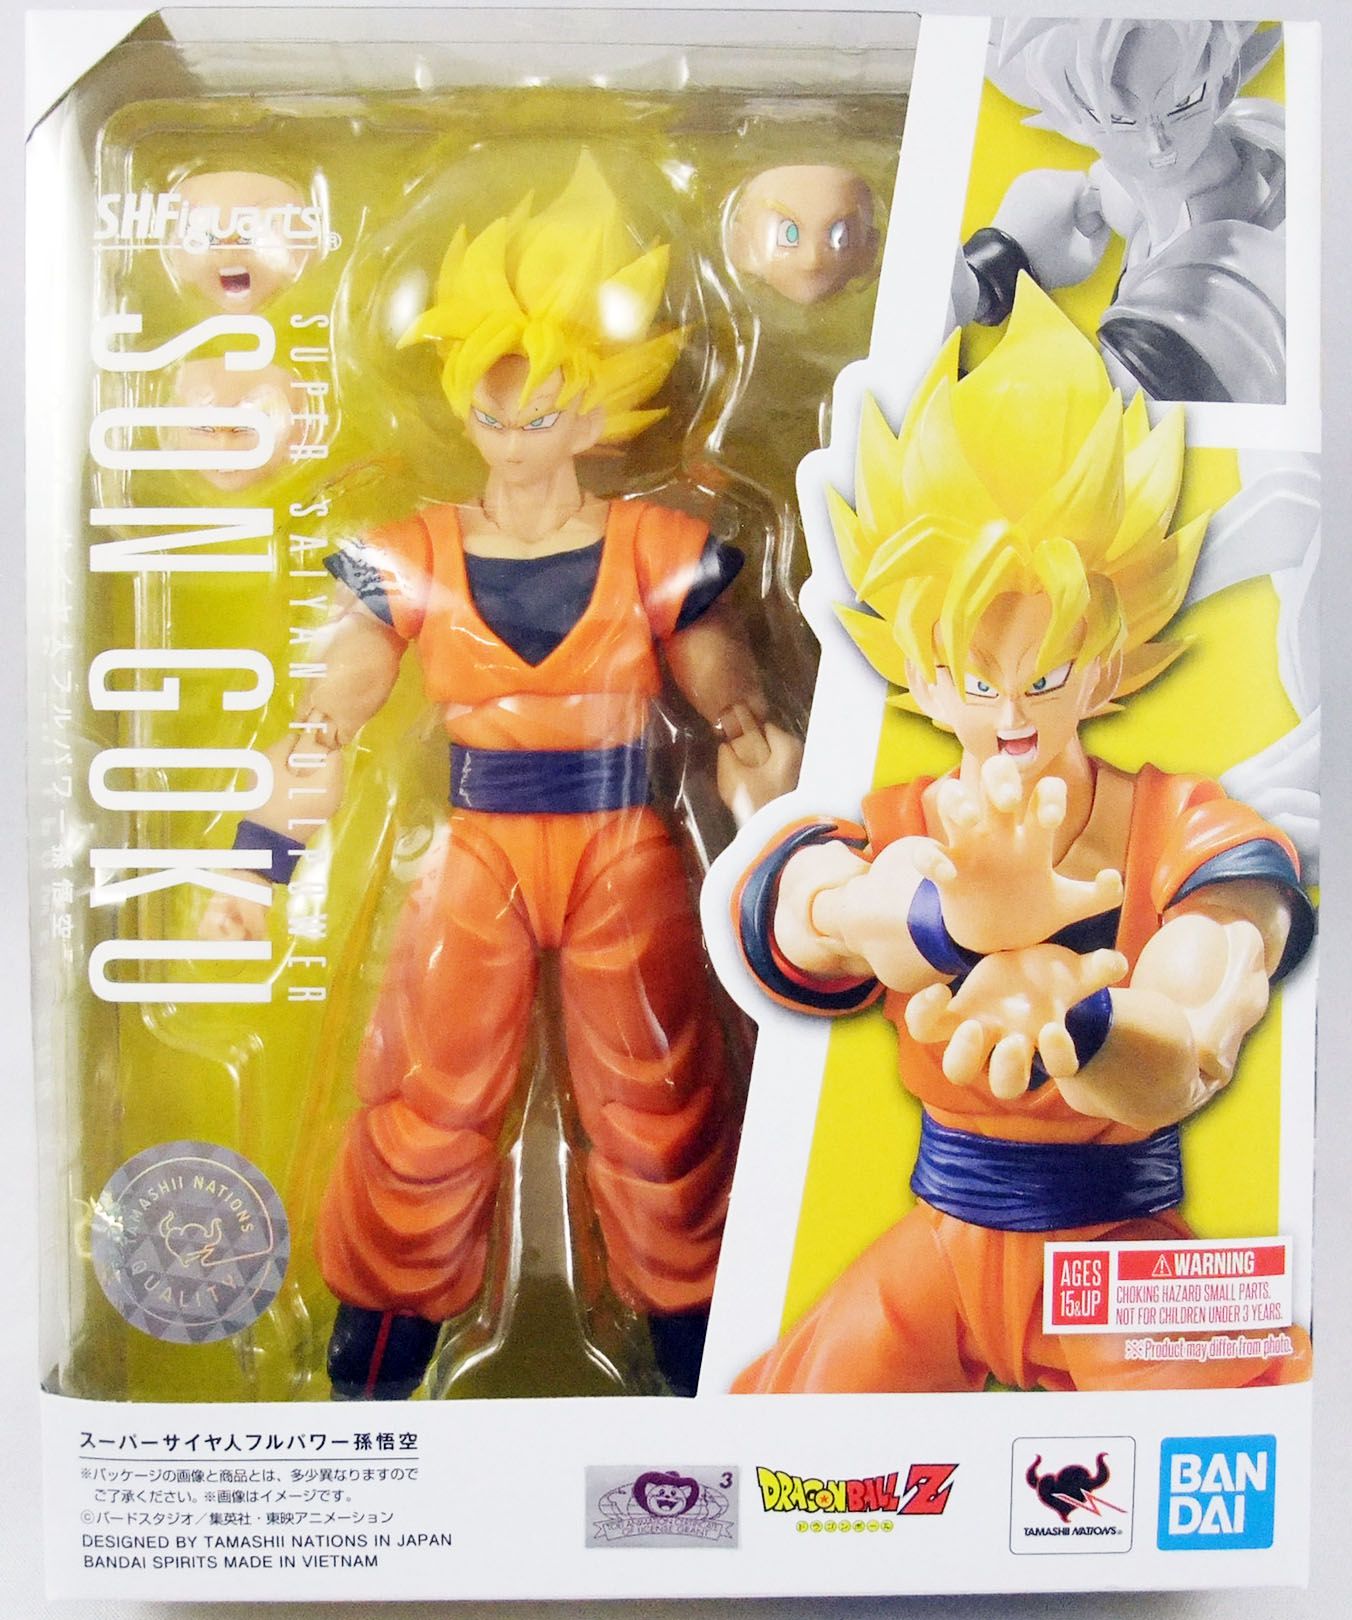 Goku Super Sayajin